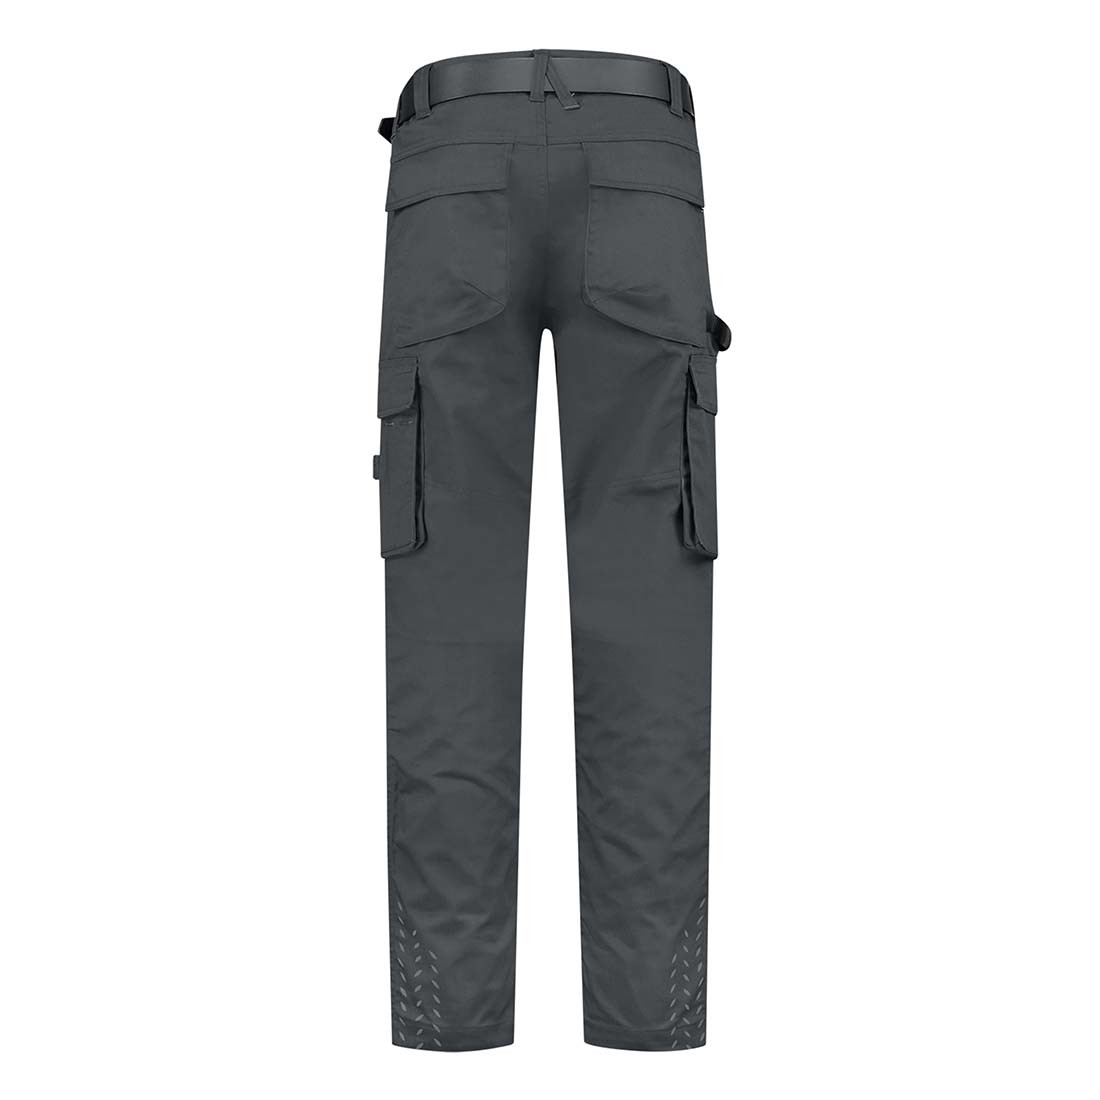 Pantalon de travail unisex - Les vêtements de protection